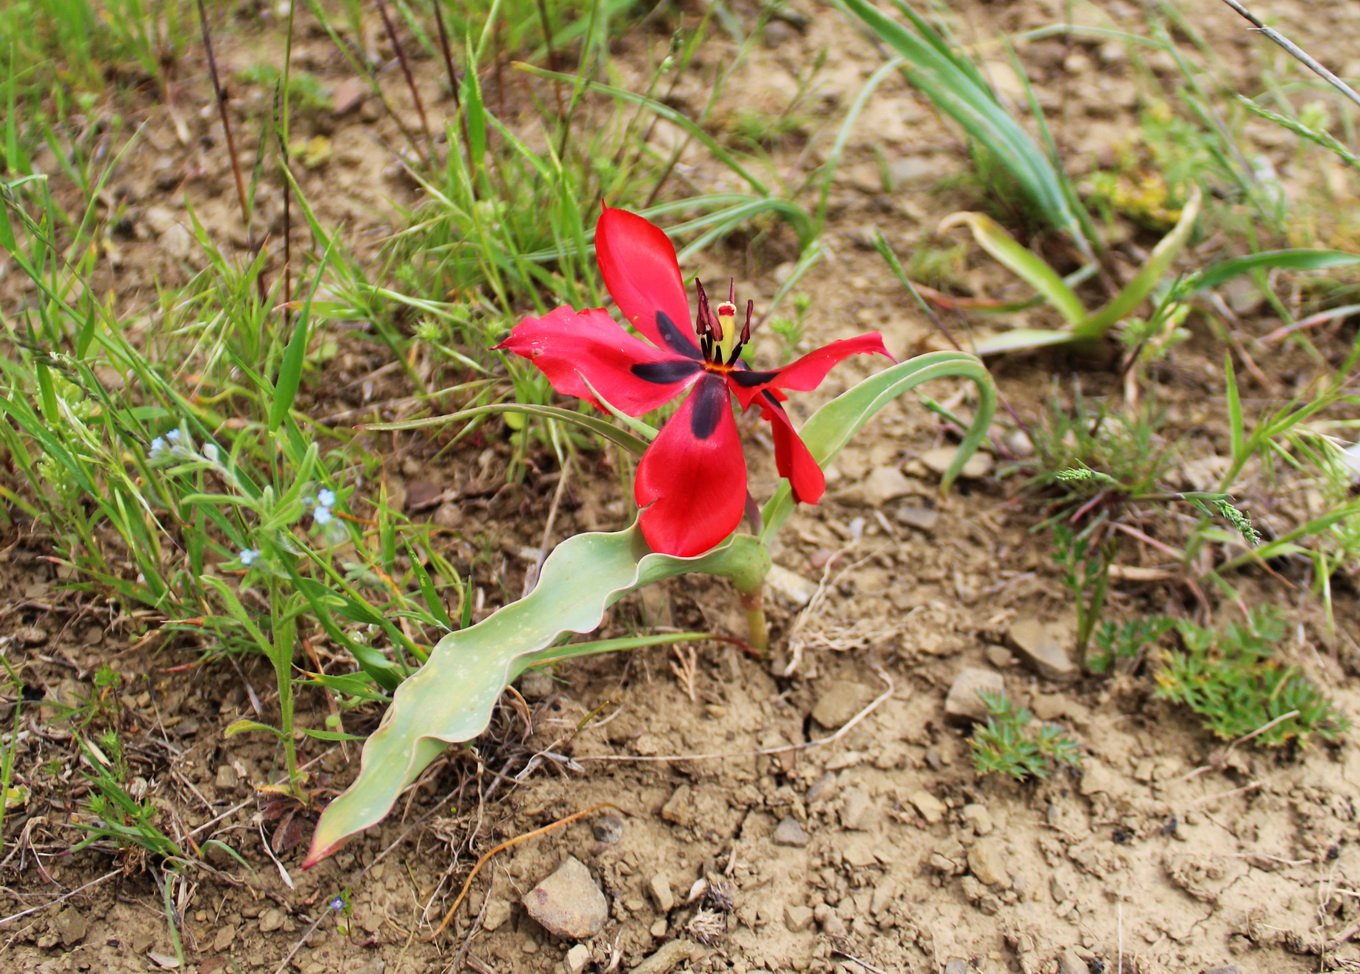 Image of genus Tulipa specimen.